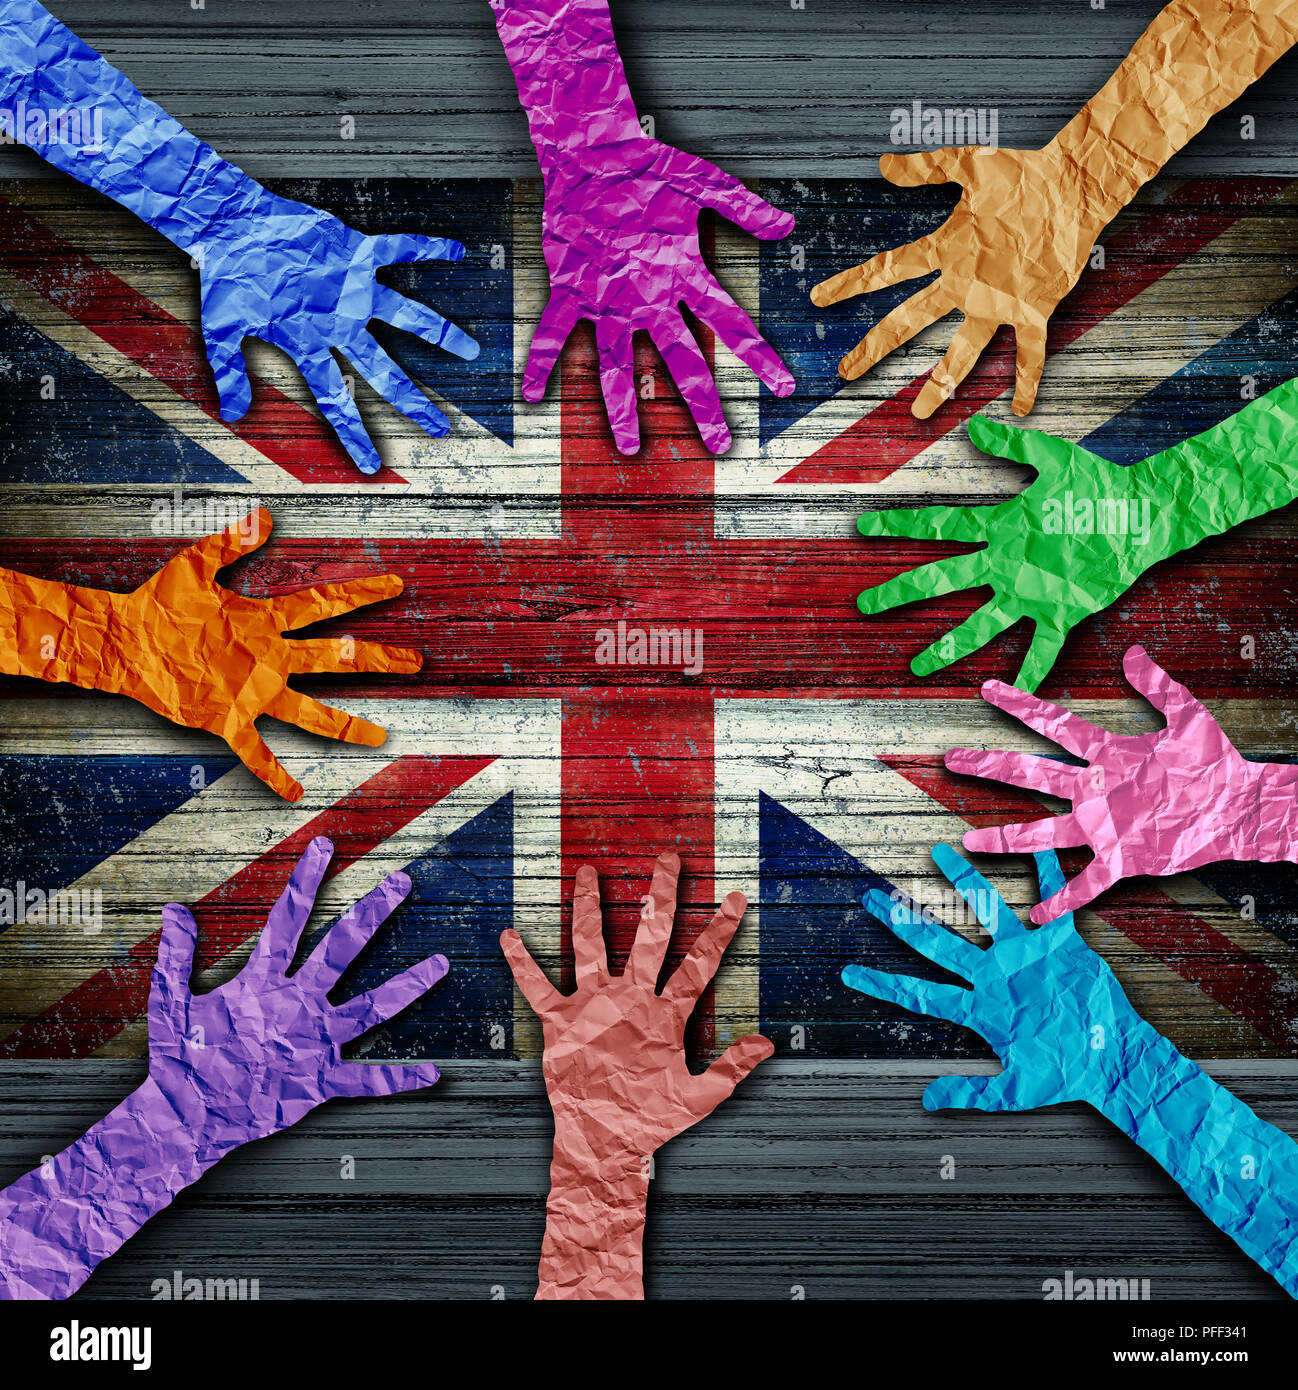 La diversité culturelle aussi divers fait mains de papier froissé reliés ensemble comme un concept pour la Grande-Bretagne solidarité citoyenne et patriotique de l'amitié. Banque D'Images